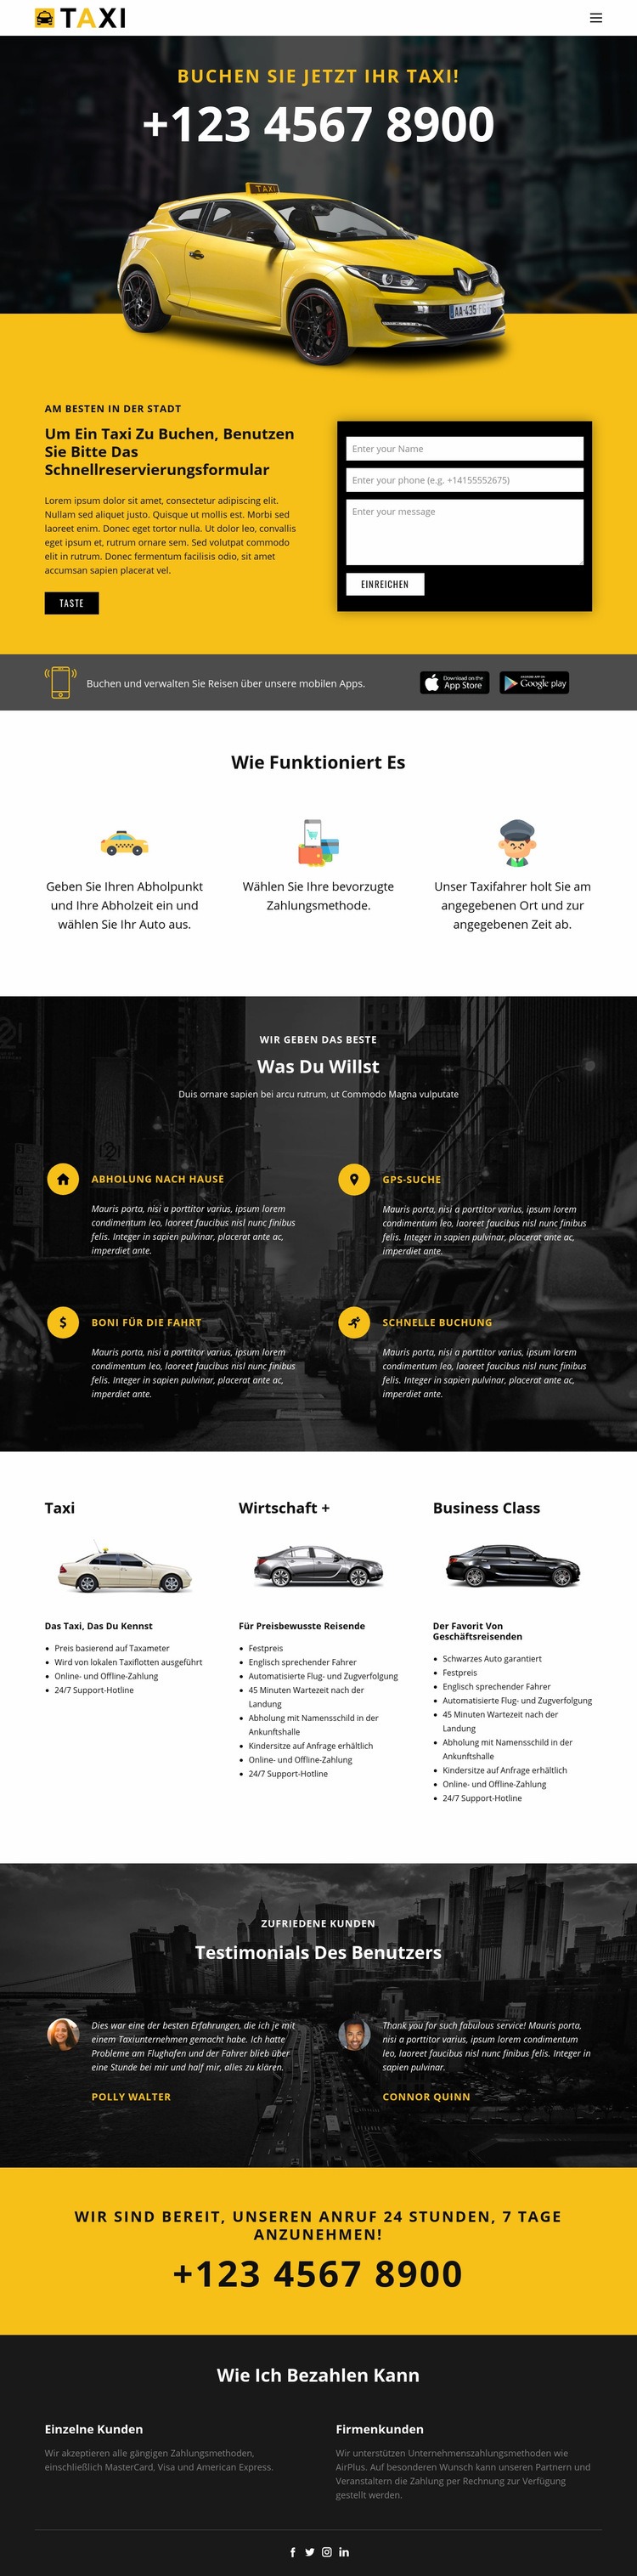 Schnellste Taxis HTML Website Builder